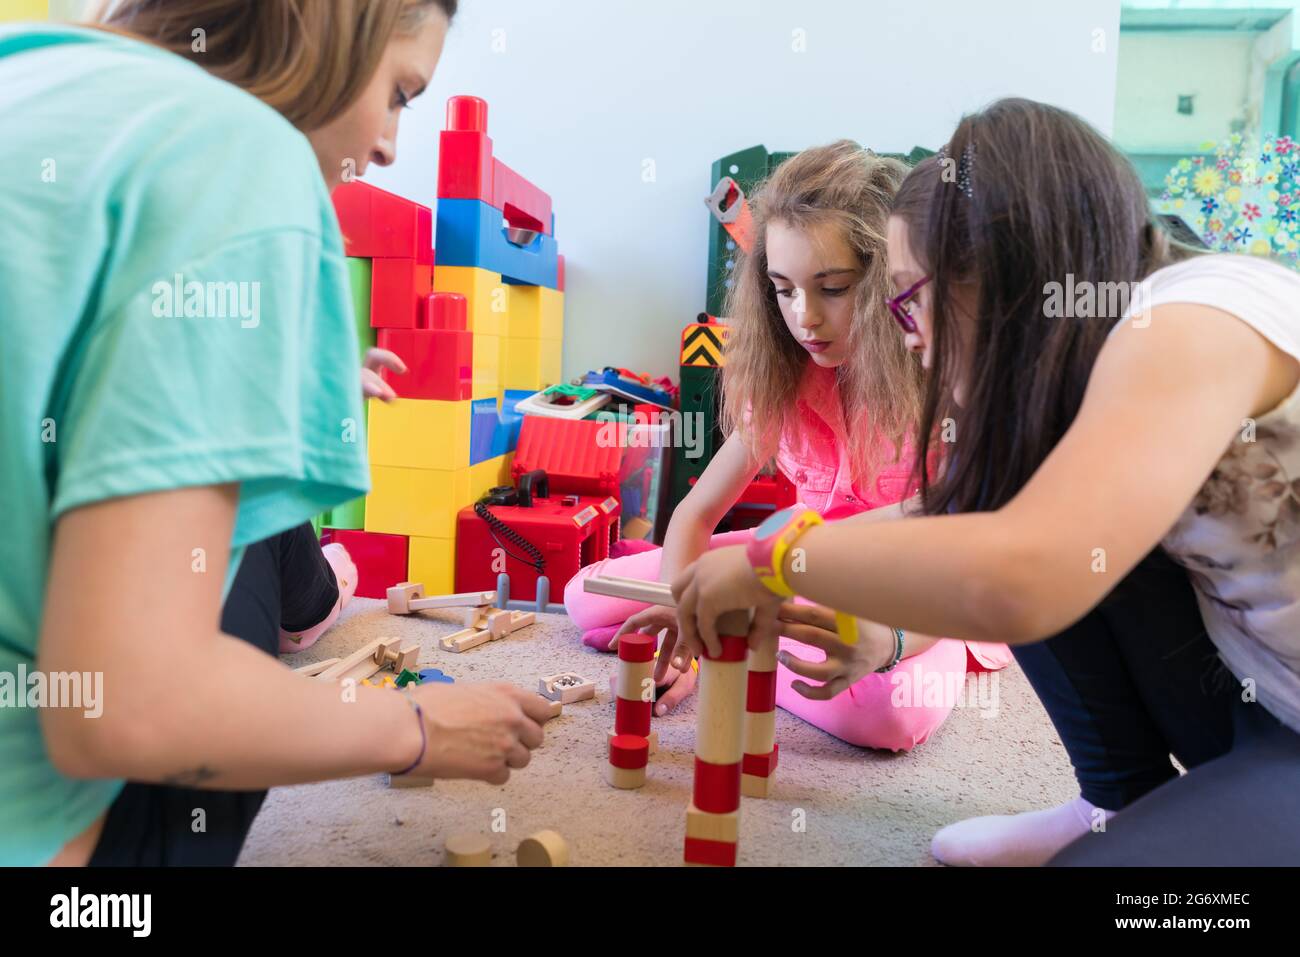 Vorschulmädchen spielen während der Spielzeit mit hölzernen Spielzeugblöcken auf dem Boden, die von einer vorsichtigen jungen Kindergärtnerin betreut werden Stockfoto